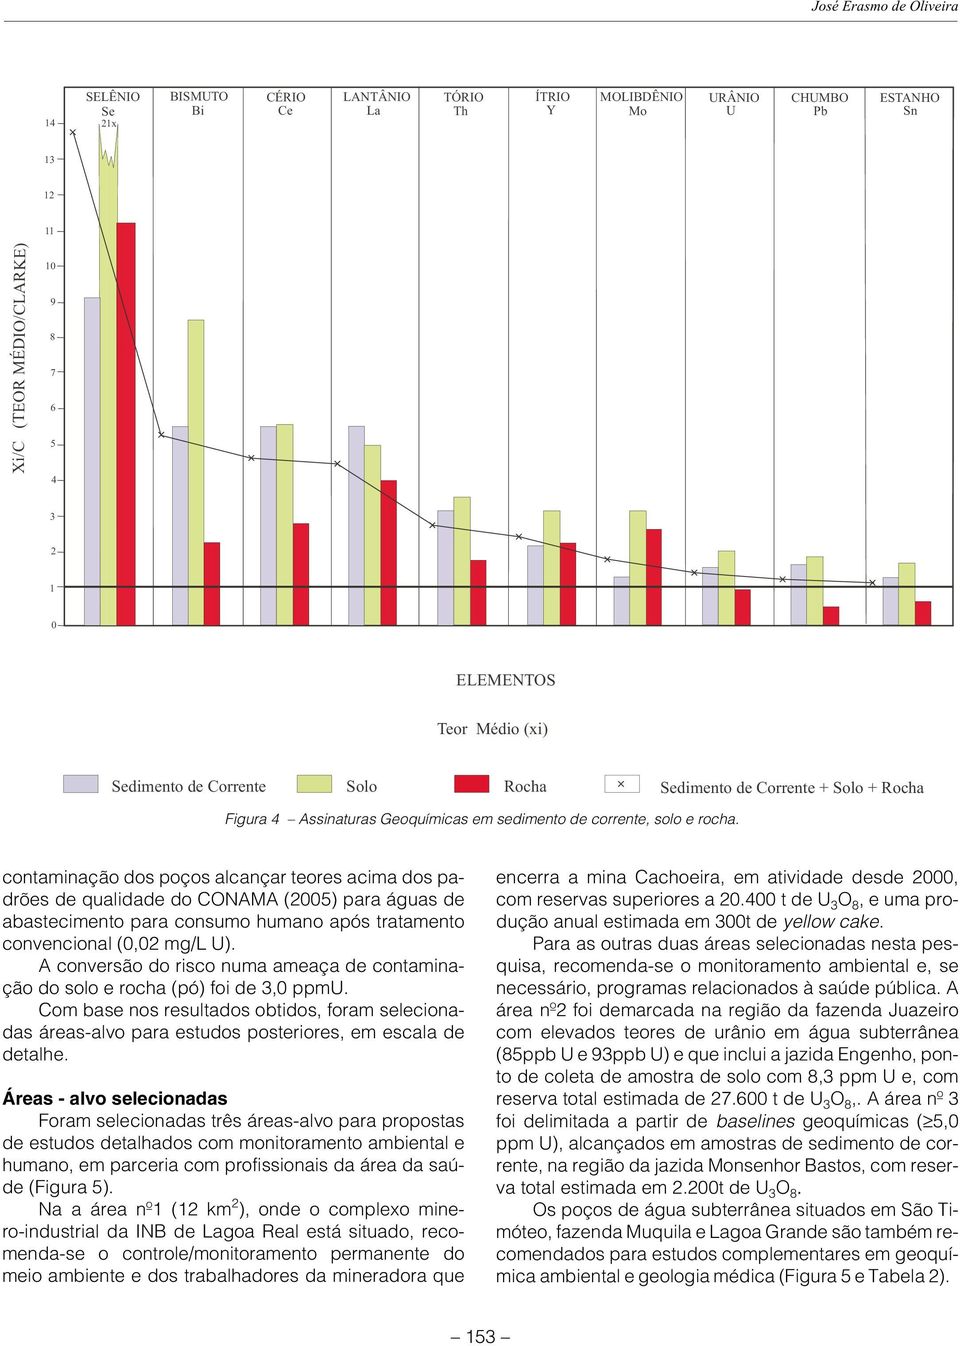 contaminação dos poços alcançar teores acima dos padrões de qualidade do CONAMA (2005) para águas de abastecimento para consumo humano após tratamento convencional (0,02 mg/l U).